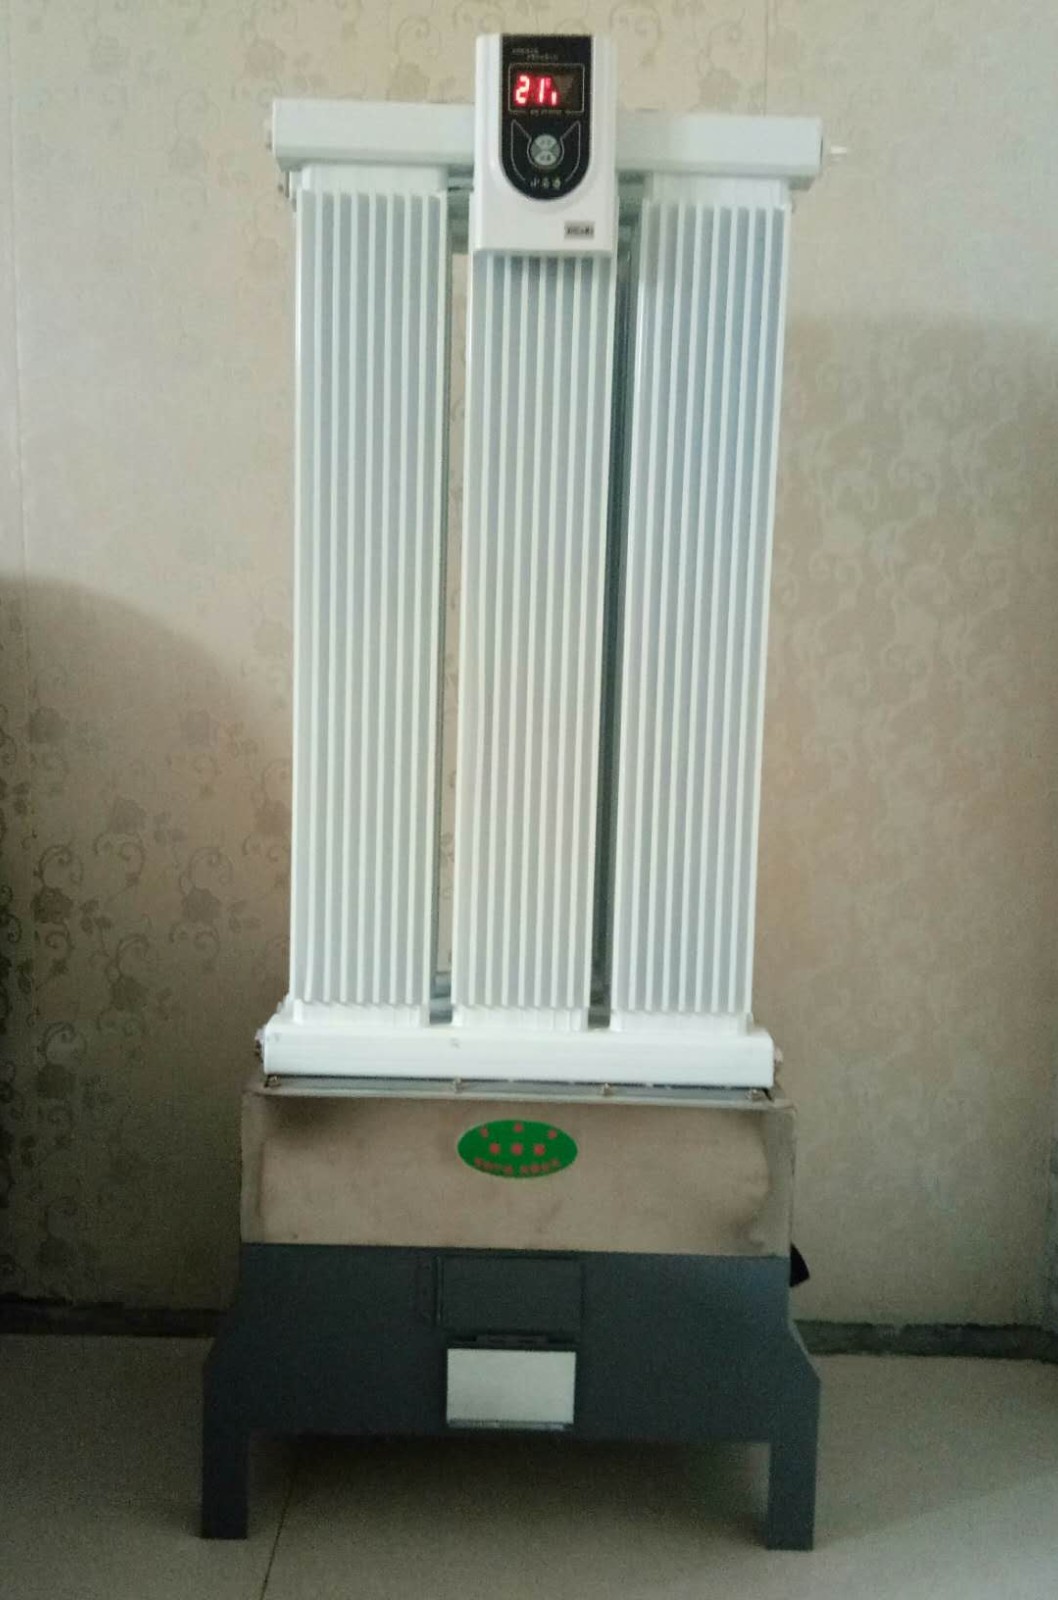 天然气气暖器(公开号：CN207456229U)